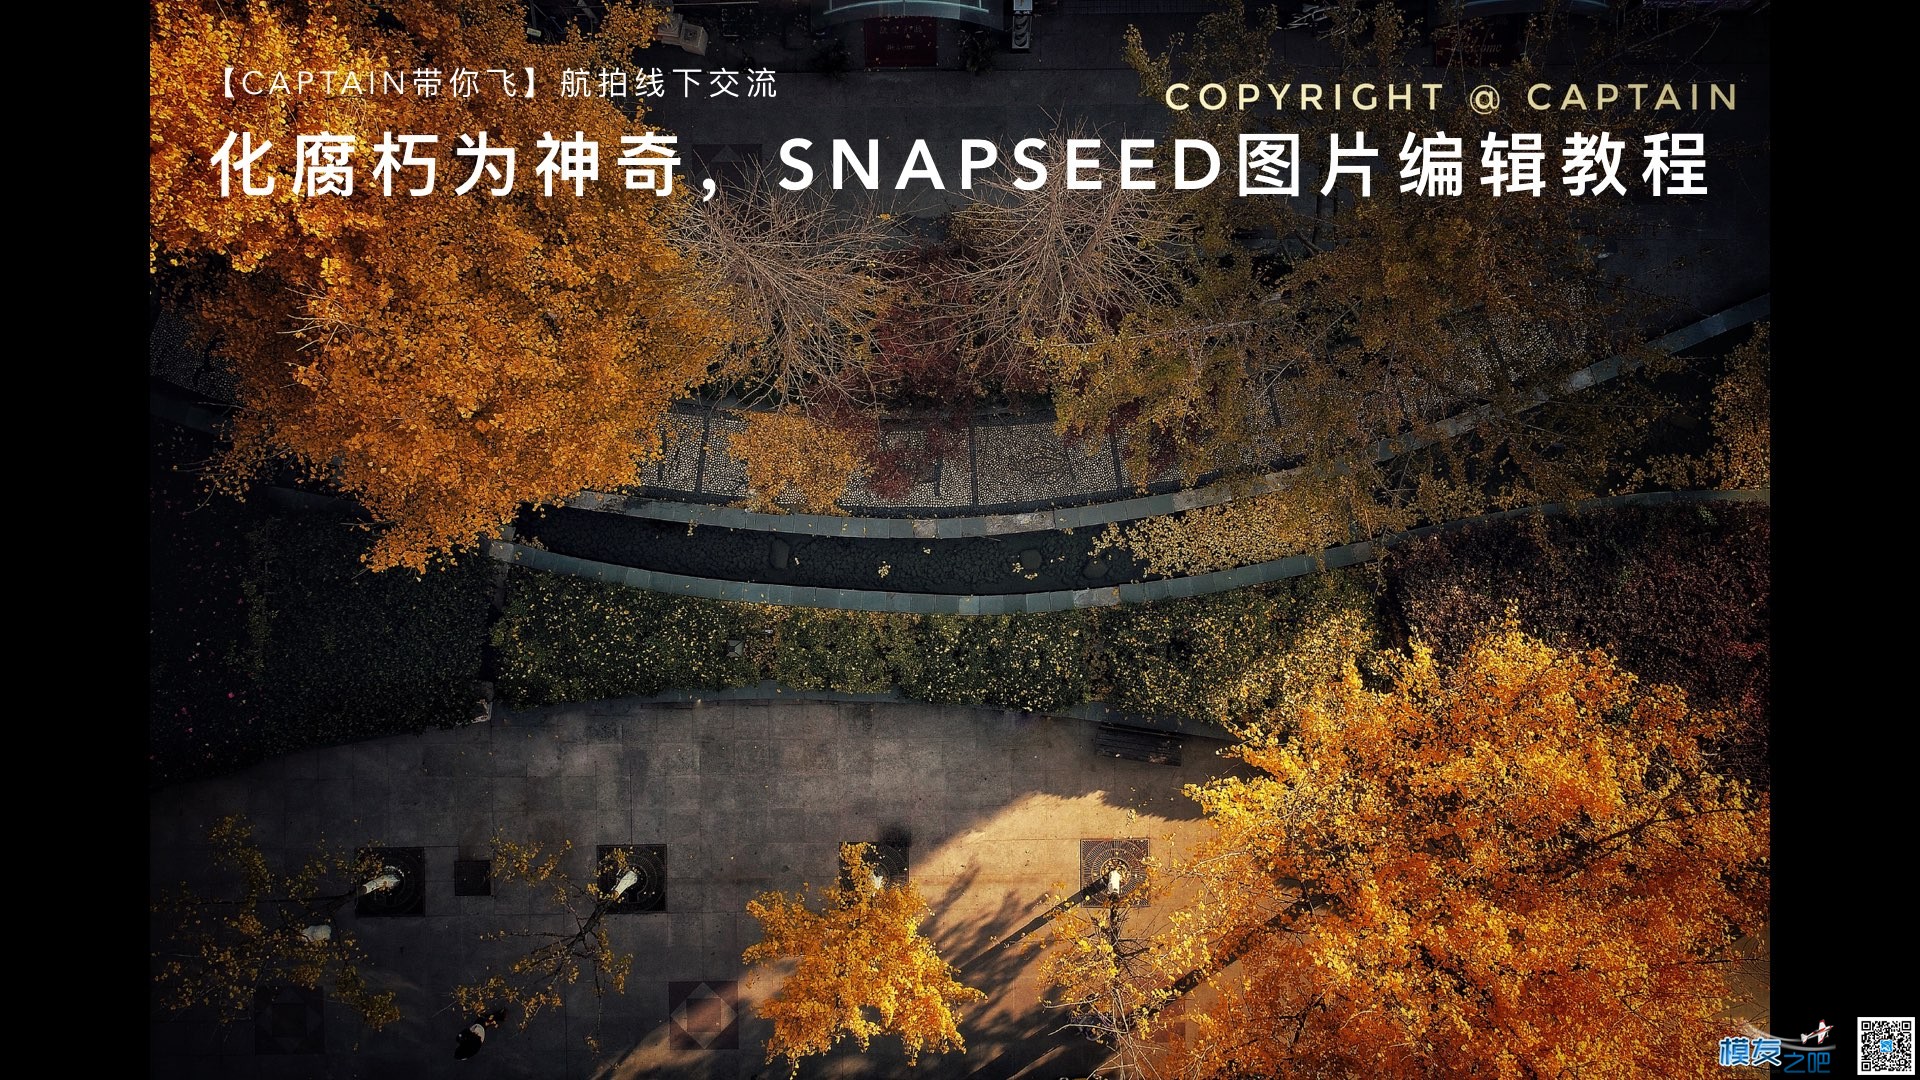 航拍图片处理Snapseed图片编辑教程 图片处理,无人机,谷歌,摄影师,爱好者 作者:洋葱头 8506 